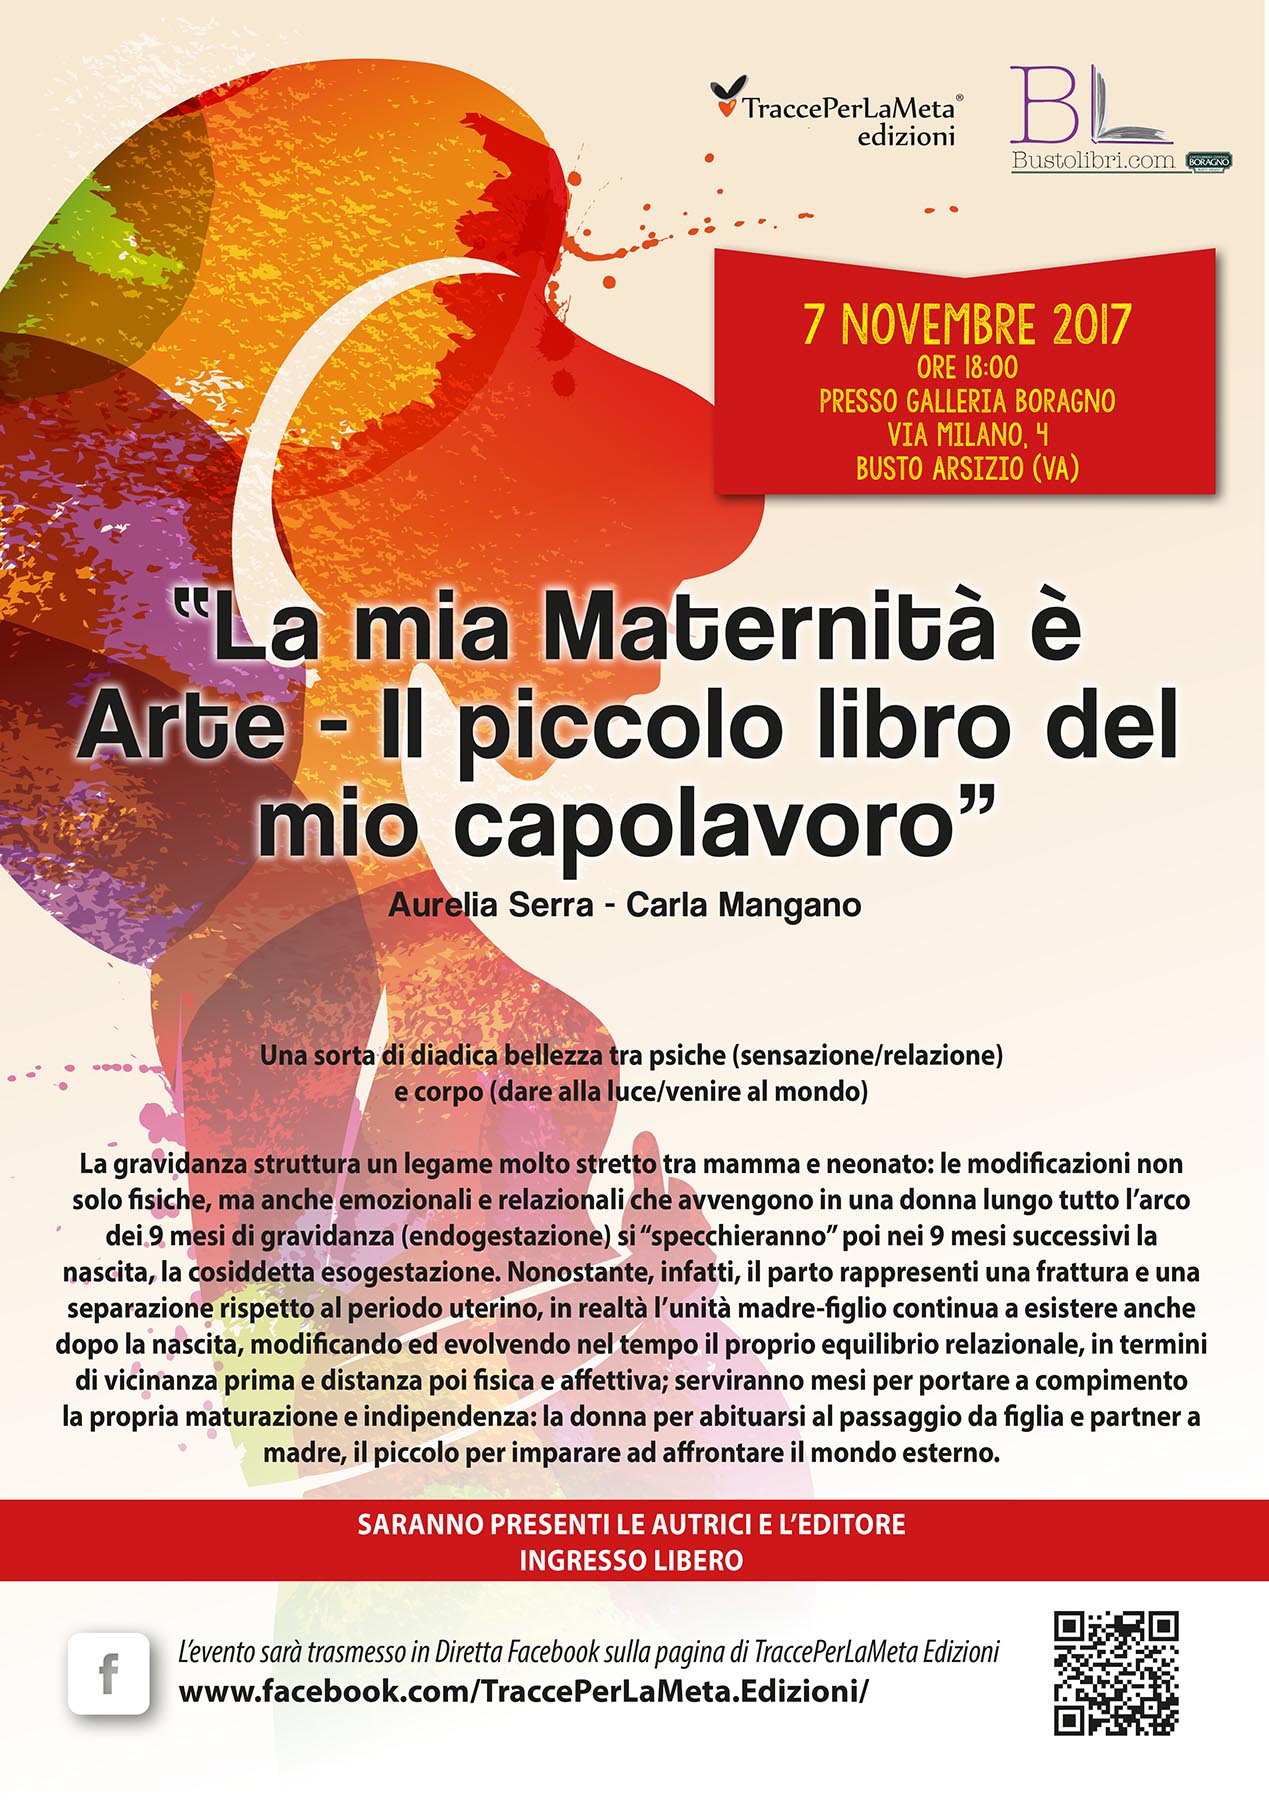 7.11.2017 – Presentazione Libro “La mia Maternità è Arte” di Aurelia Serra e Carla Mangano